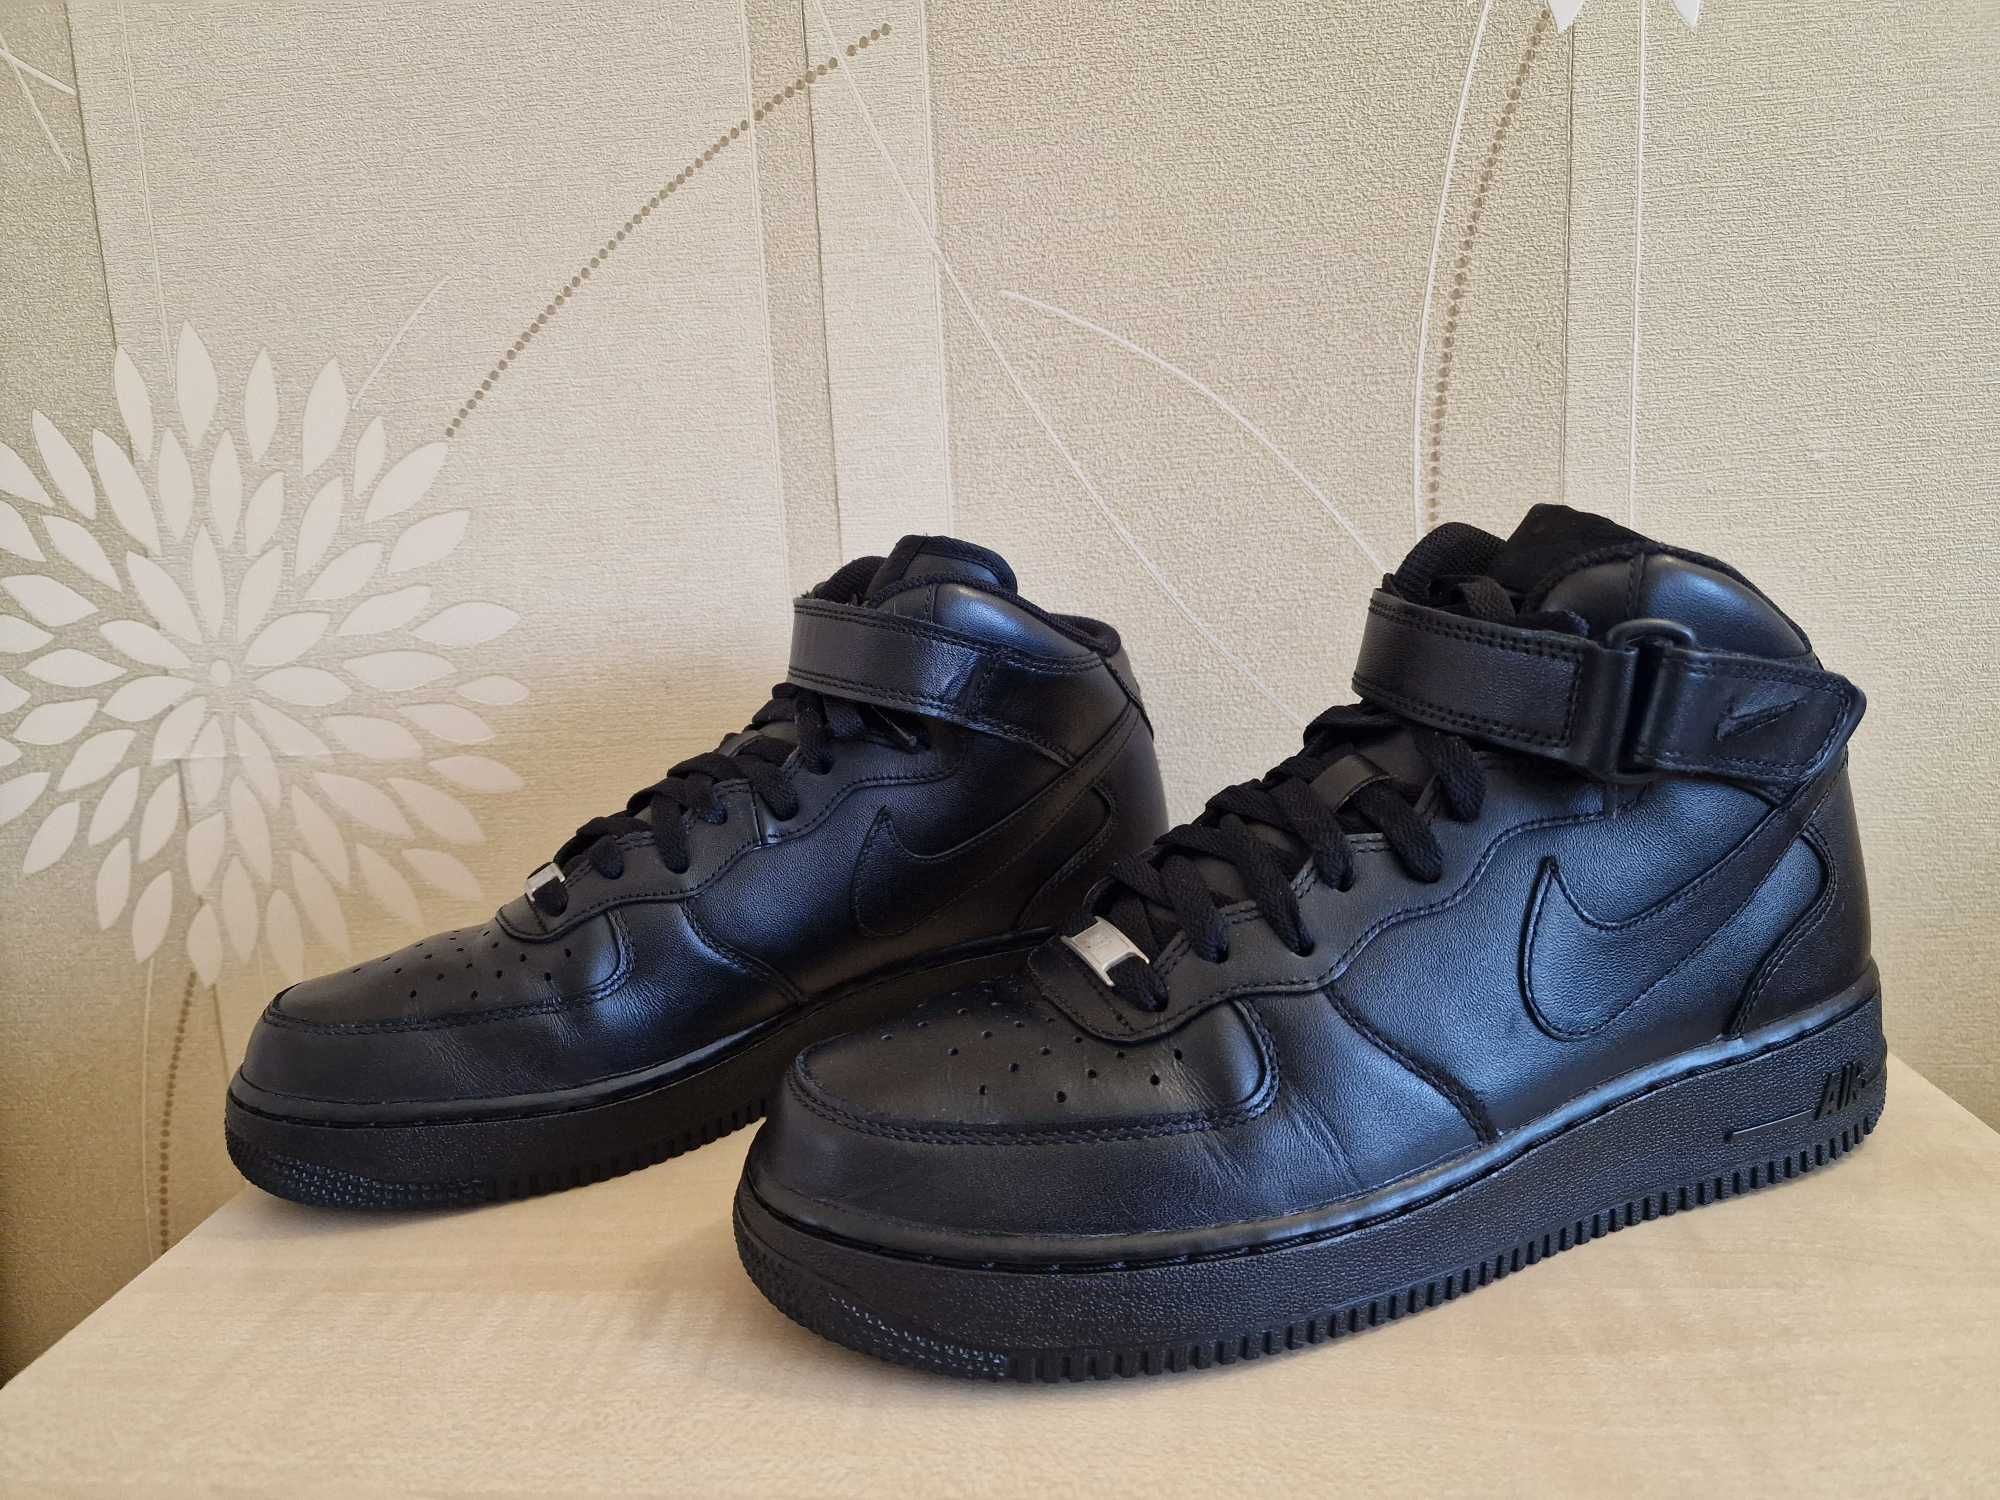 Високі шкіряні кросівки Nike Air Force 1 Mid 07 оригінал розмір 42,5